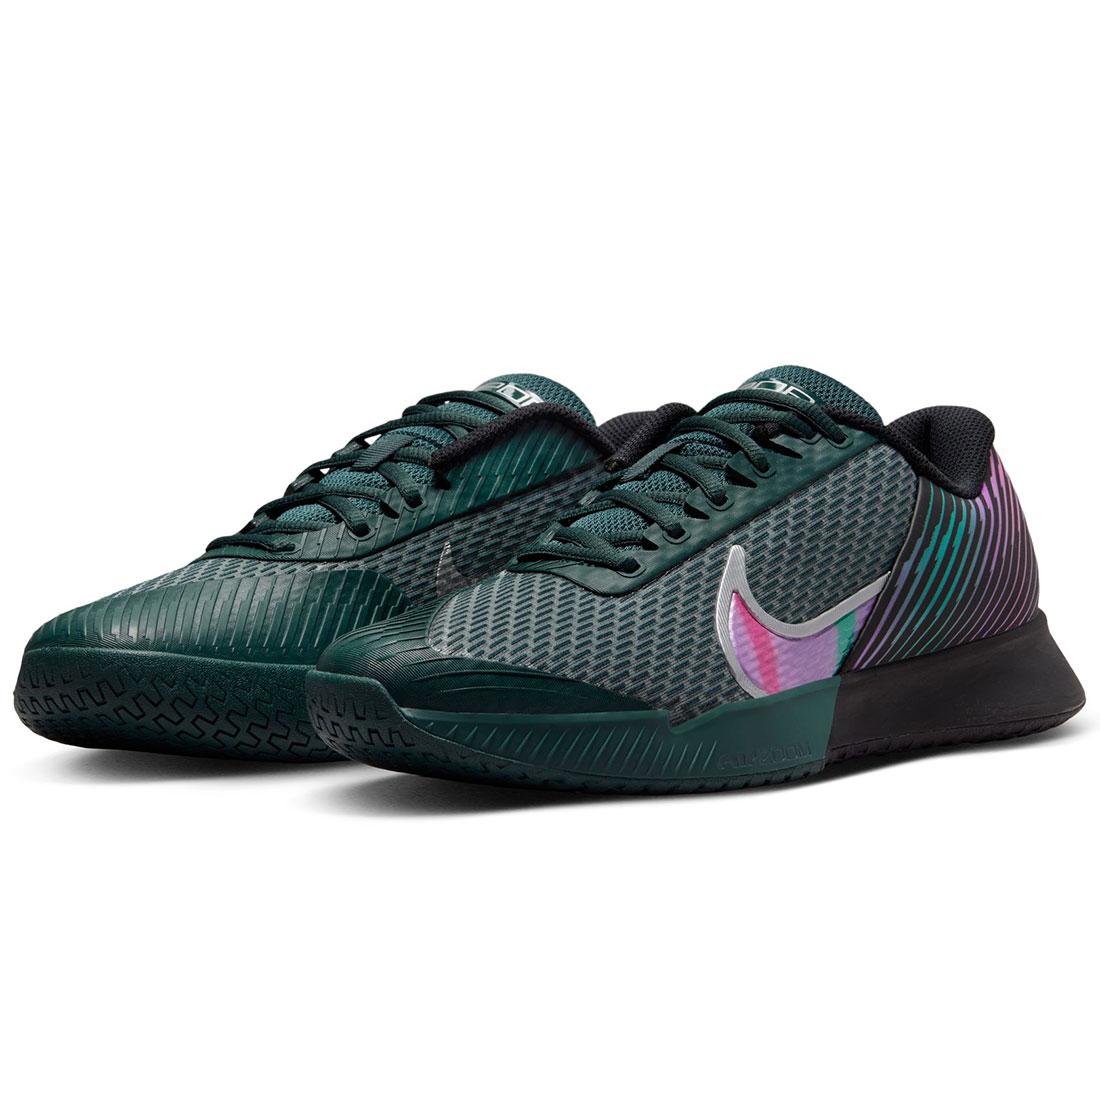 NikeCourt Men`s Vapor Pro 2 Premium Tennis Shoes Black and Multi-Color